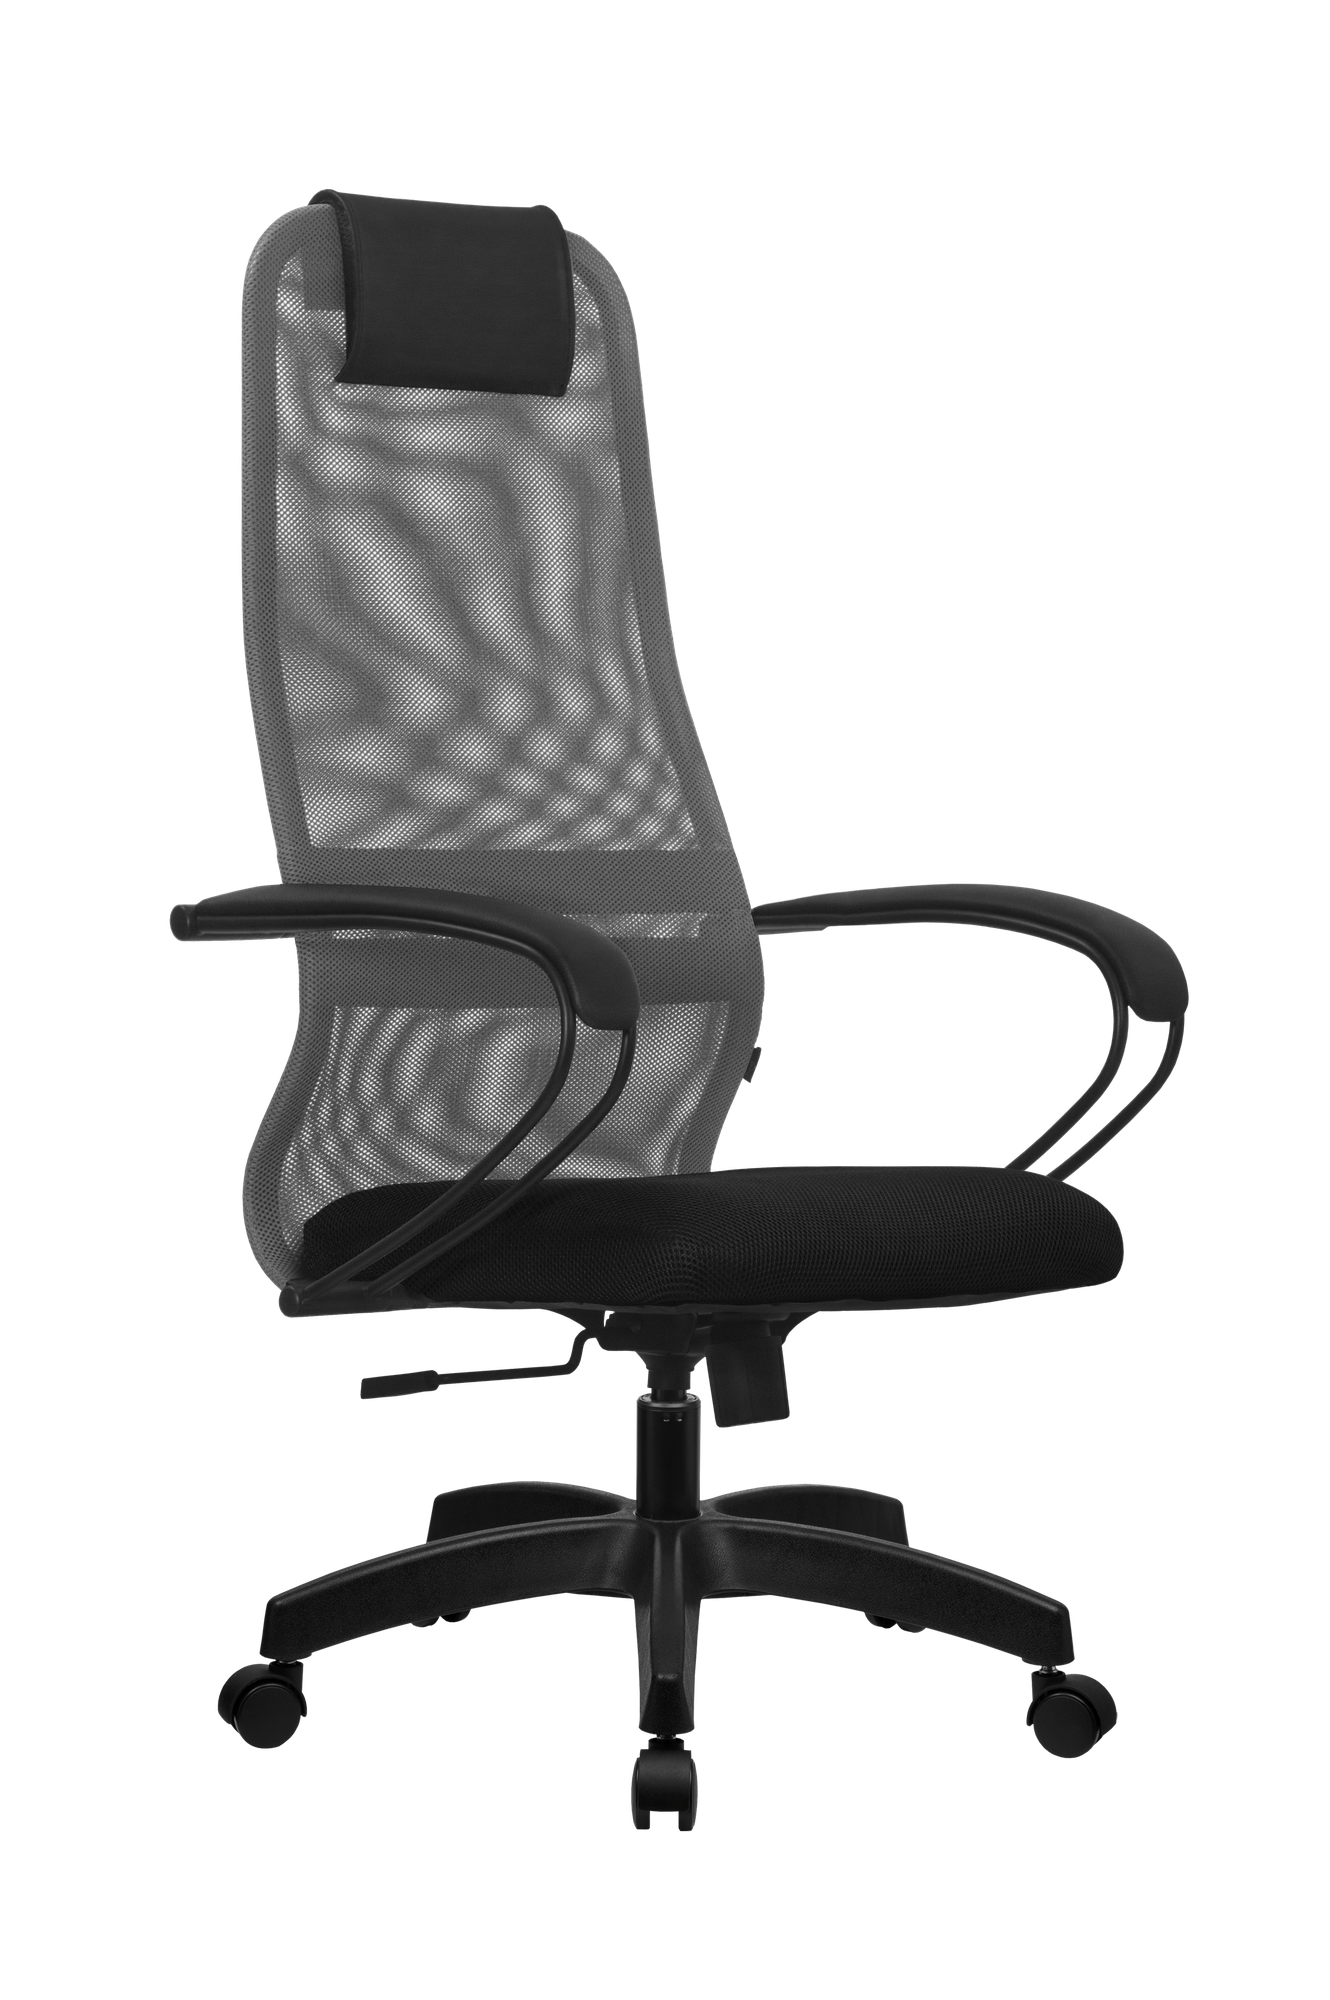 Кресло SU-B-8 кресло Метта кресло офисное кресло компьютерное (Черный/серый)